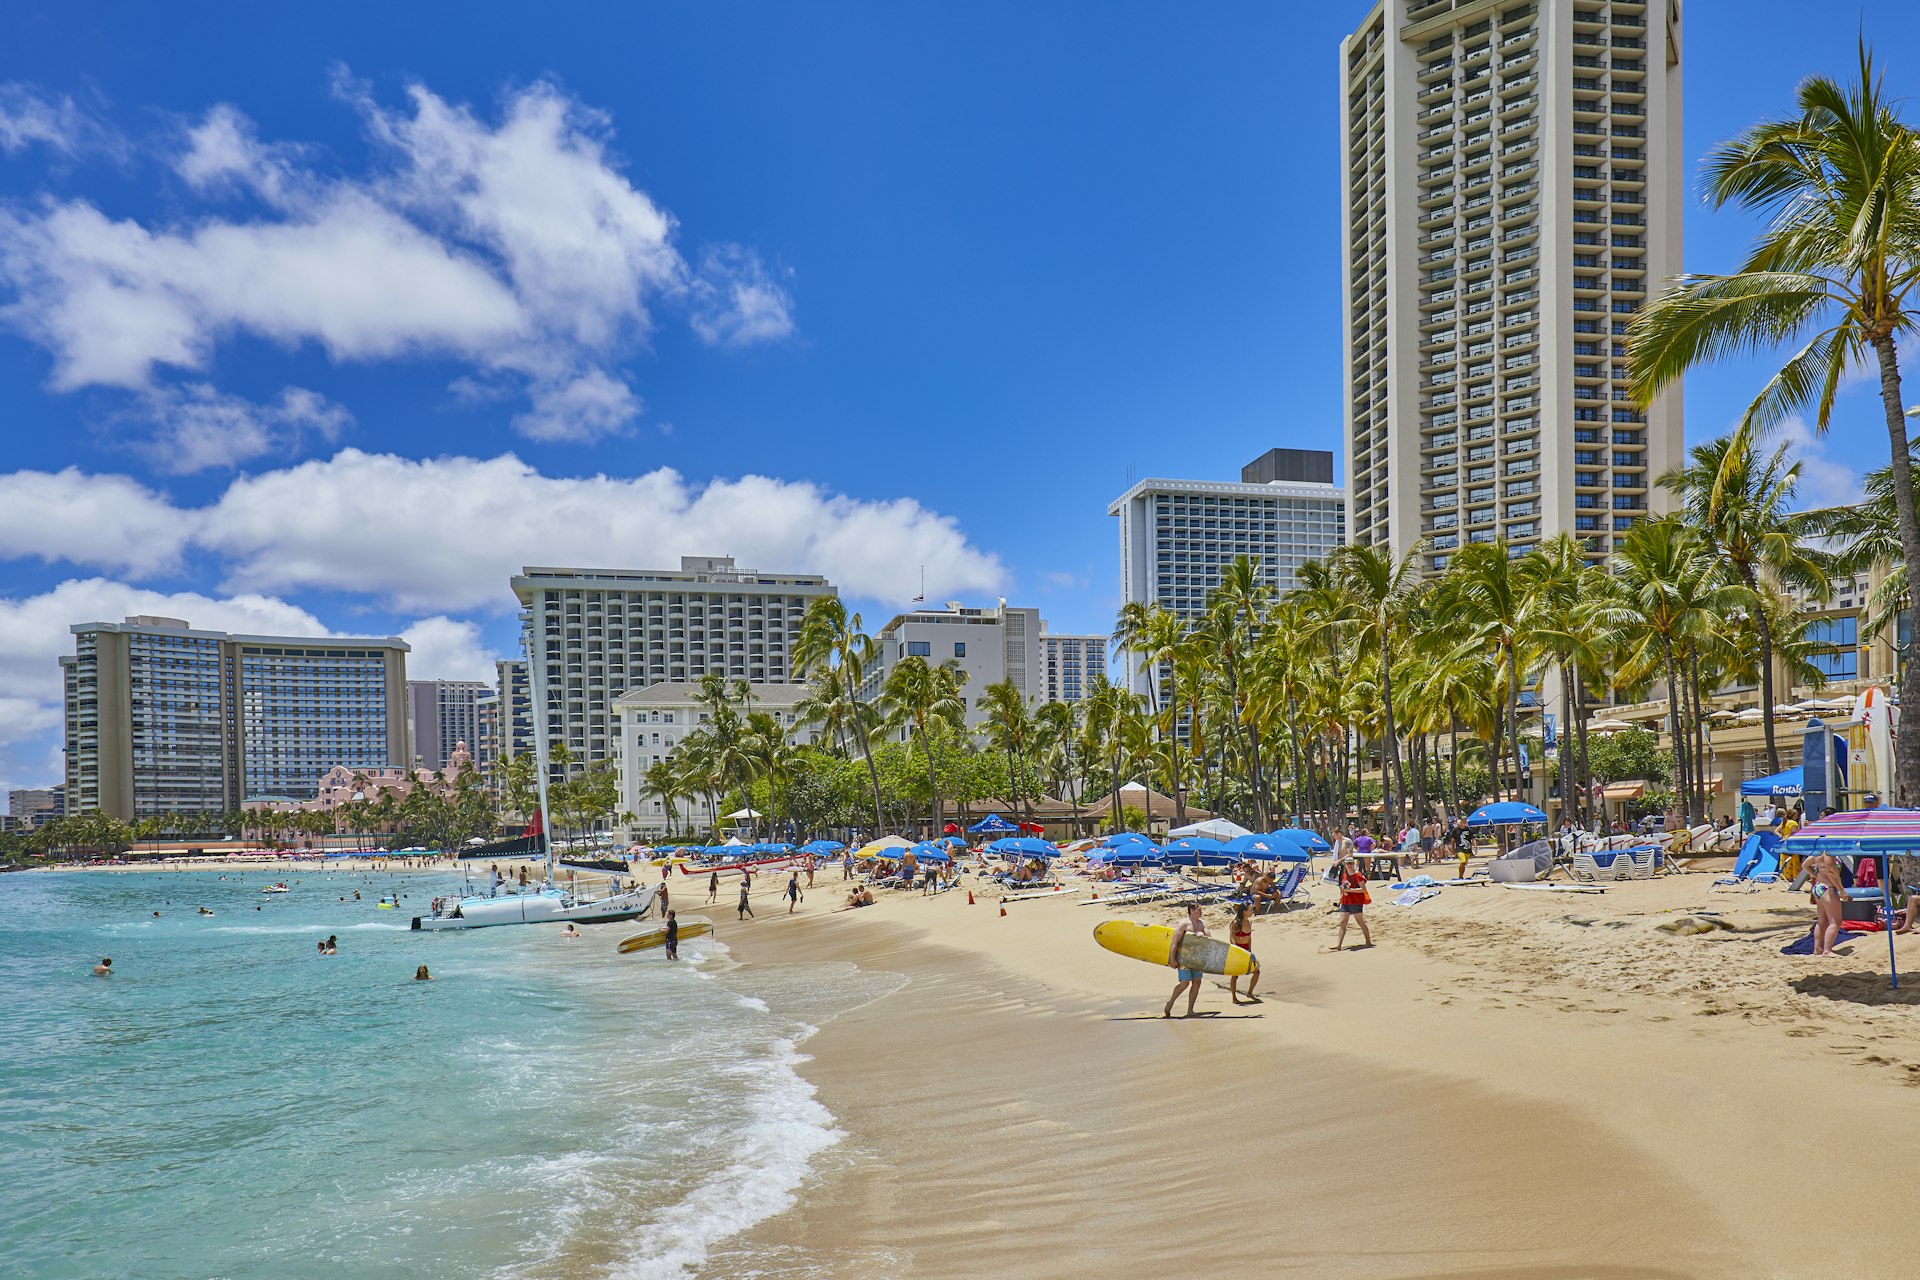 Waikiki Beach and hotels